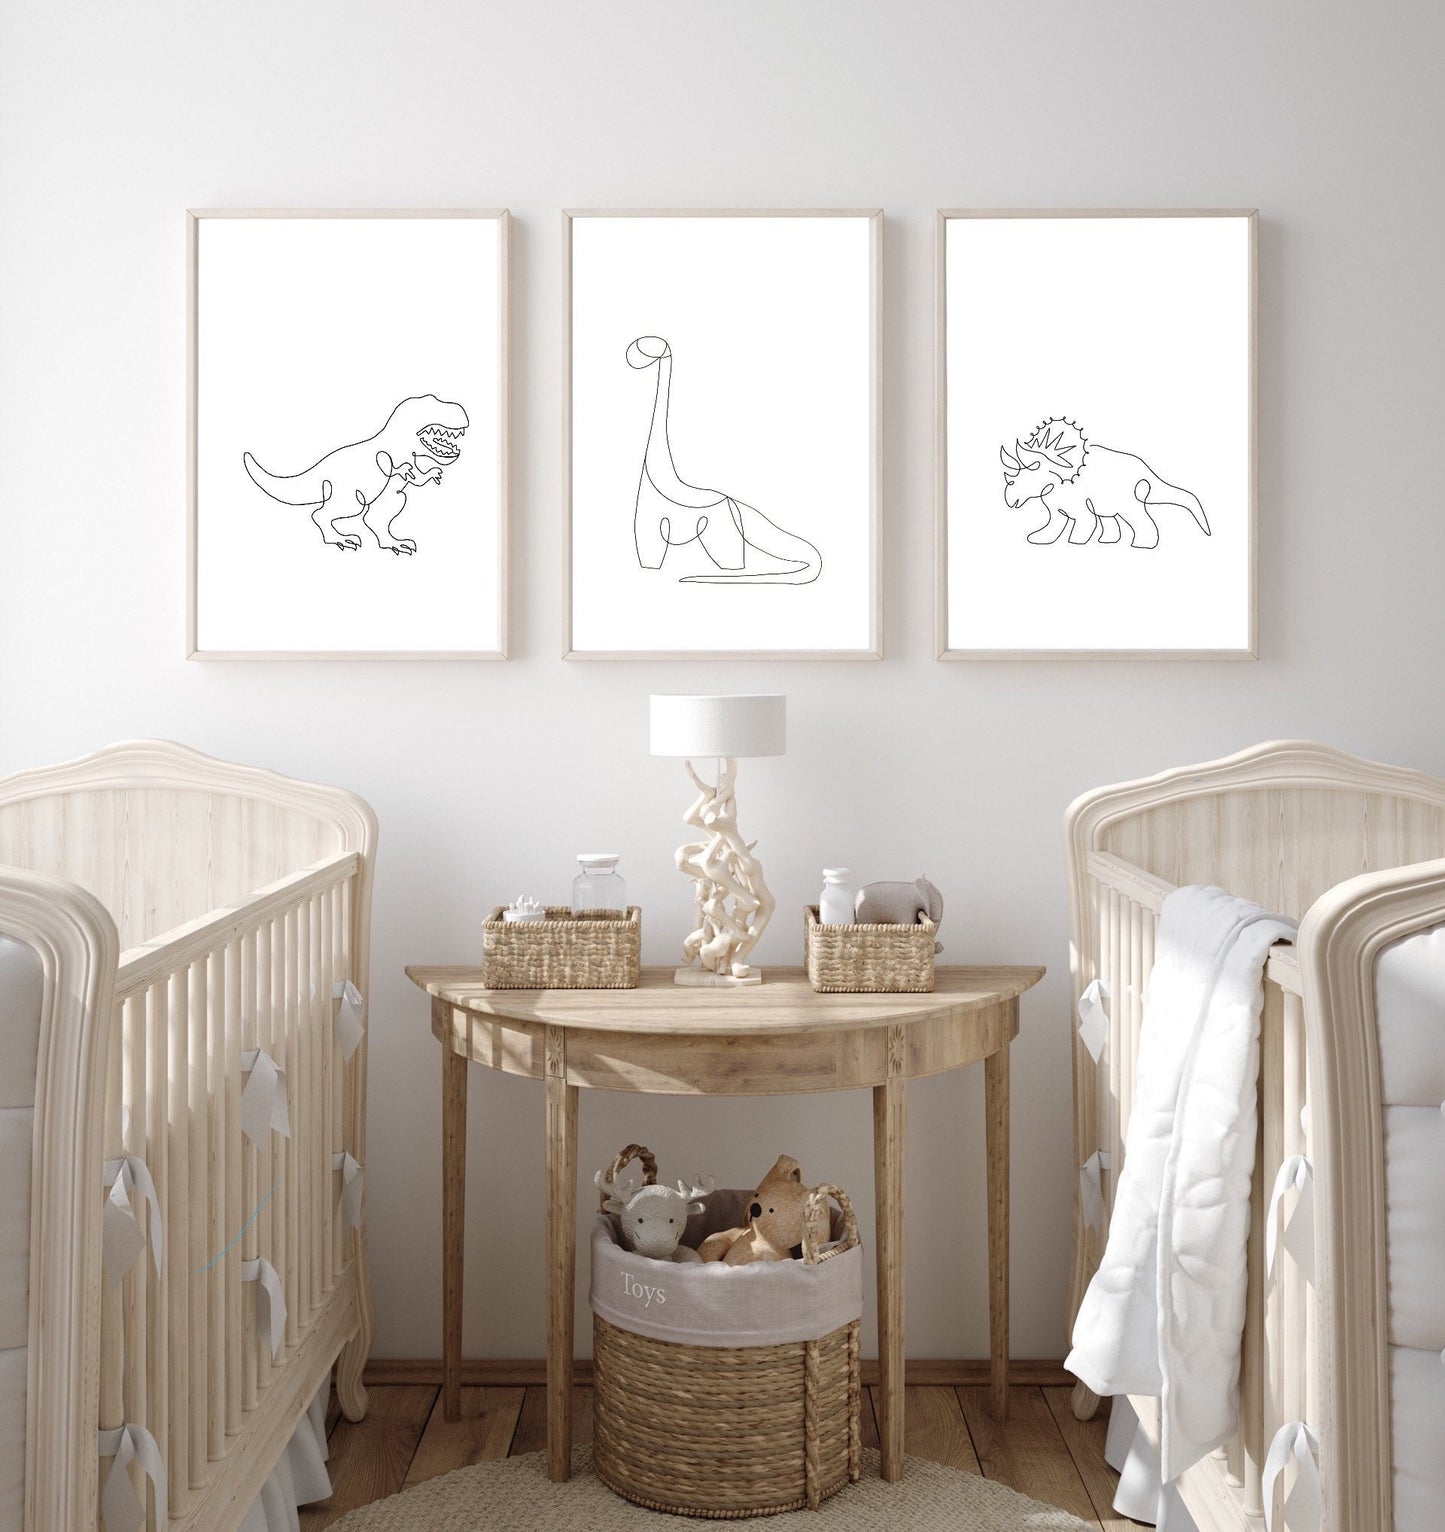 Dinosaur nursery prints set of 3, black and white minimalist wall art, kids playroom decor, T-rex nursery decor, triceratops nursery art